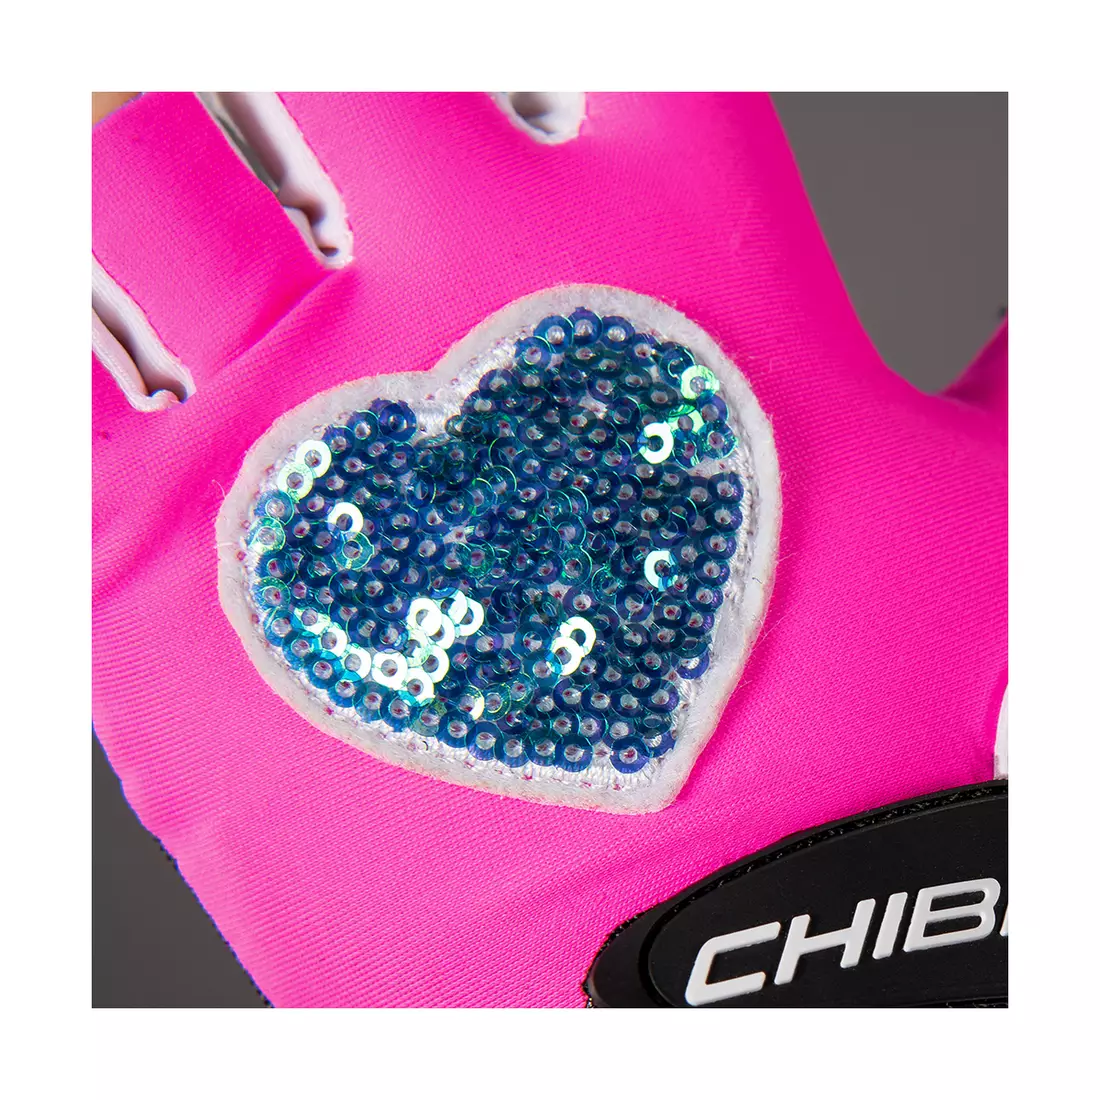 CHIBA COOL KIDS dziecięce rękawiczki rowerowe różowe/serce